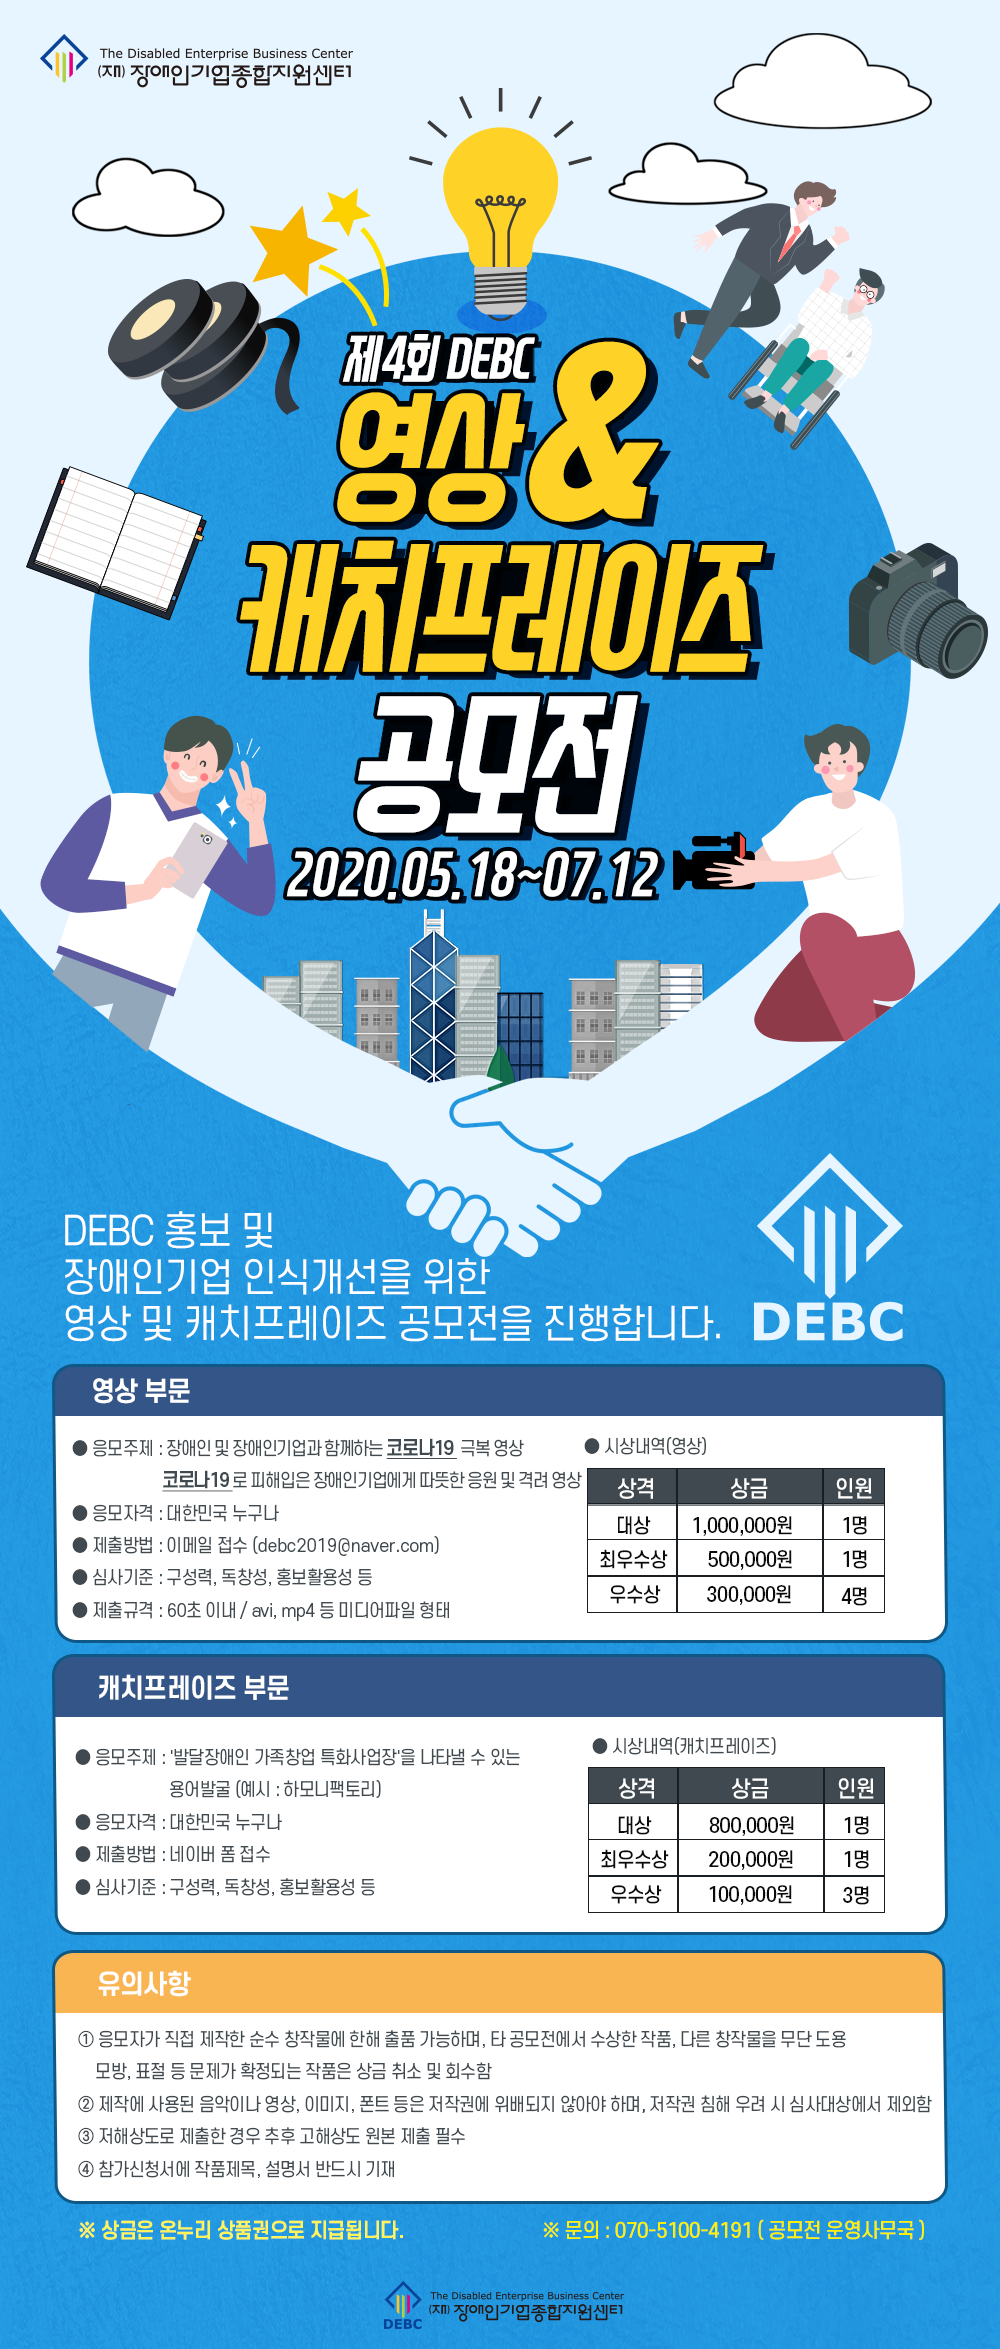 제 4회 DEBC 콘텐츠 공모전 개최